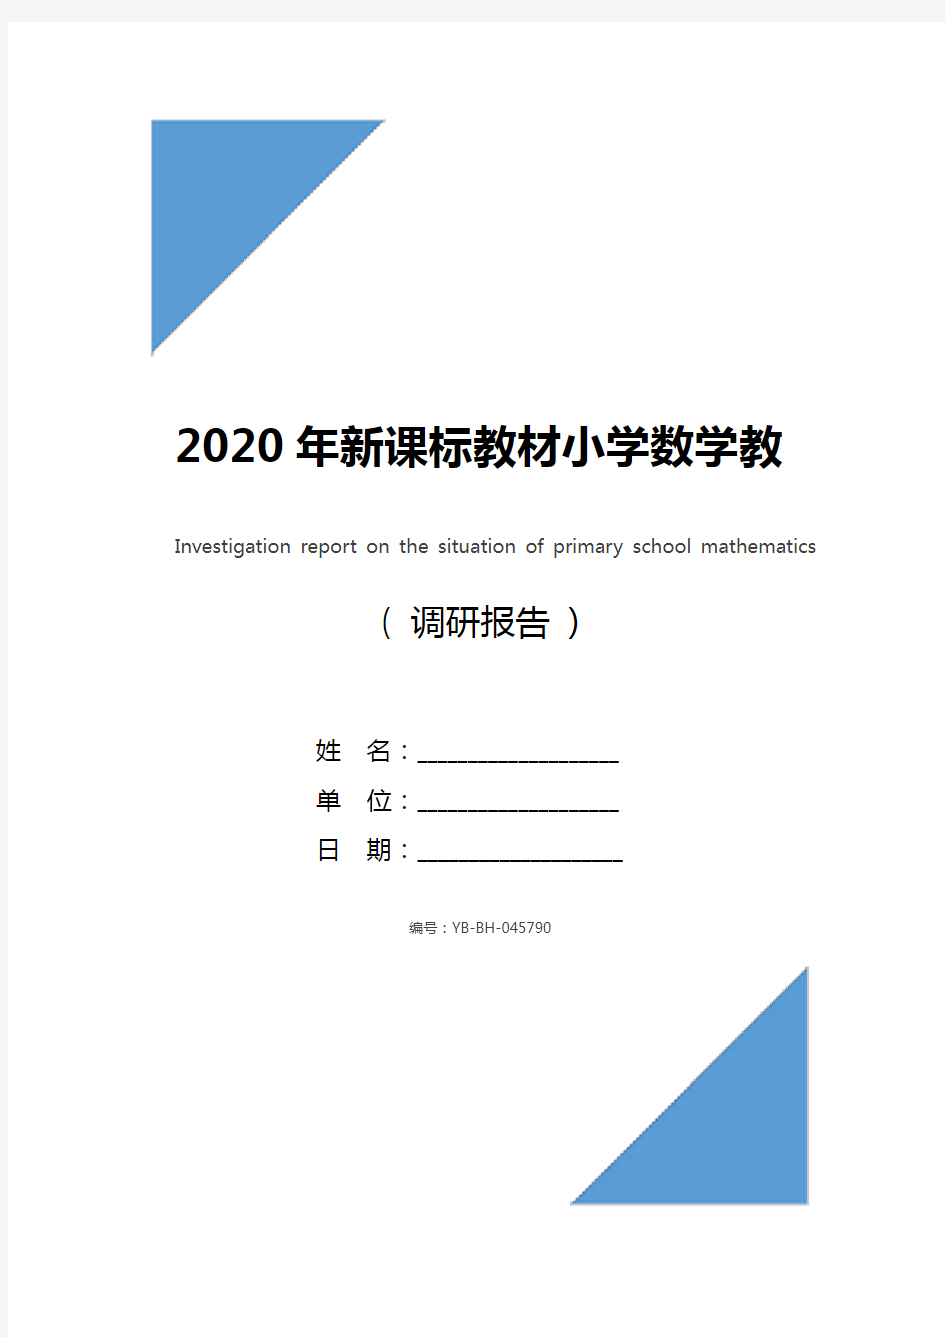 2020年新课标教材小学数学教学情况调研报告